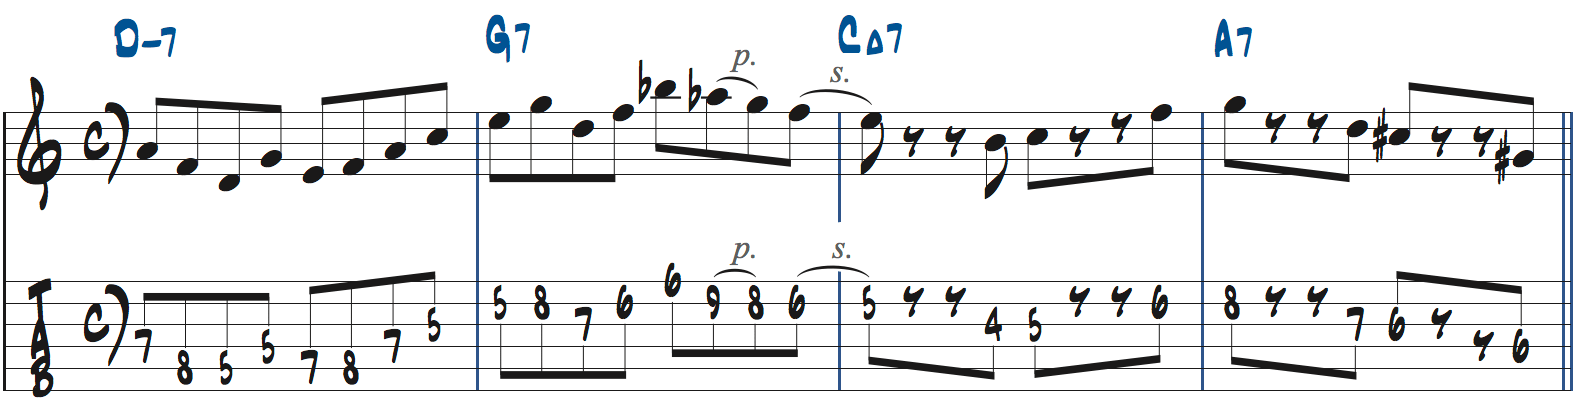 251リックを使った後のフレーズの作り方2楽譜